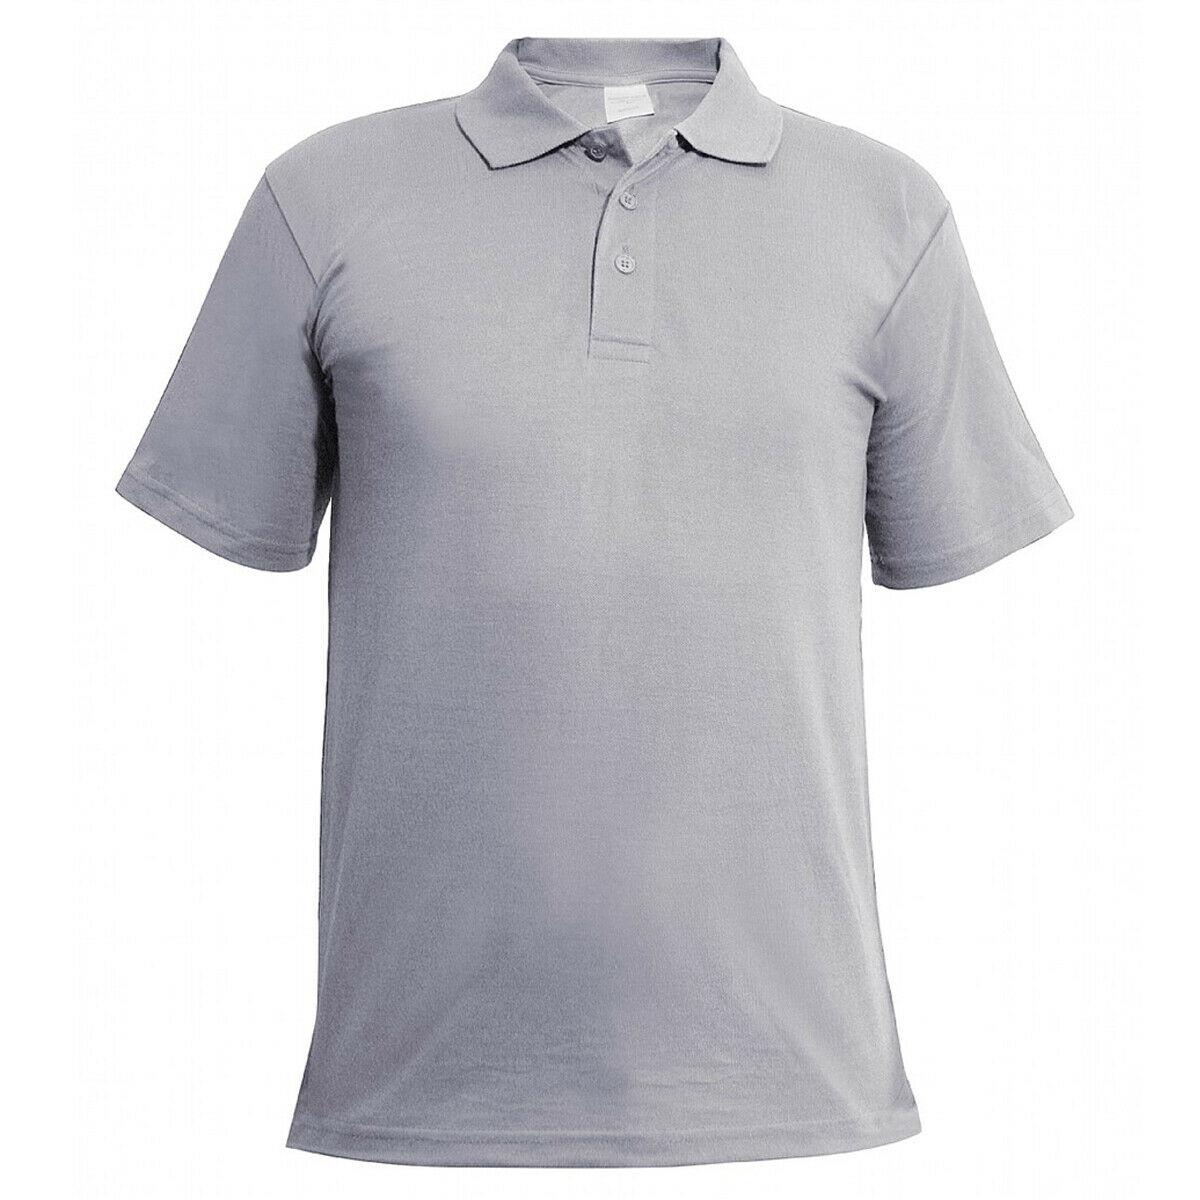 Maroon Short Sleeve Polo T-Shirt